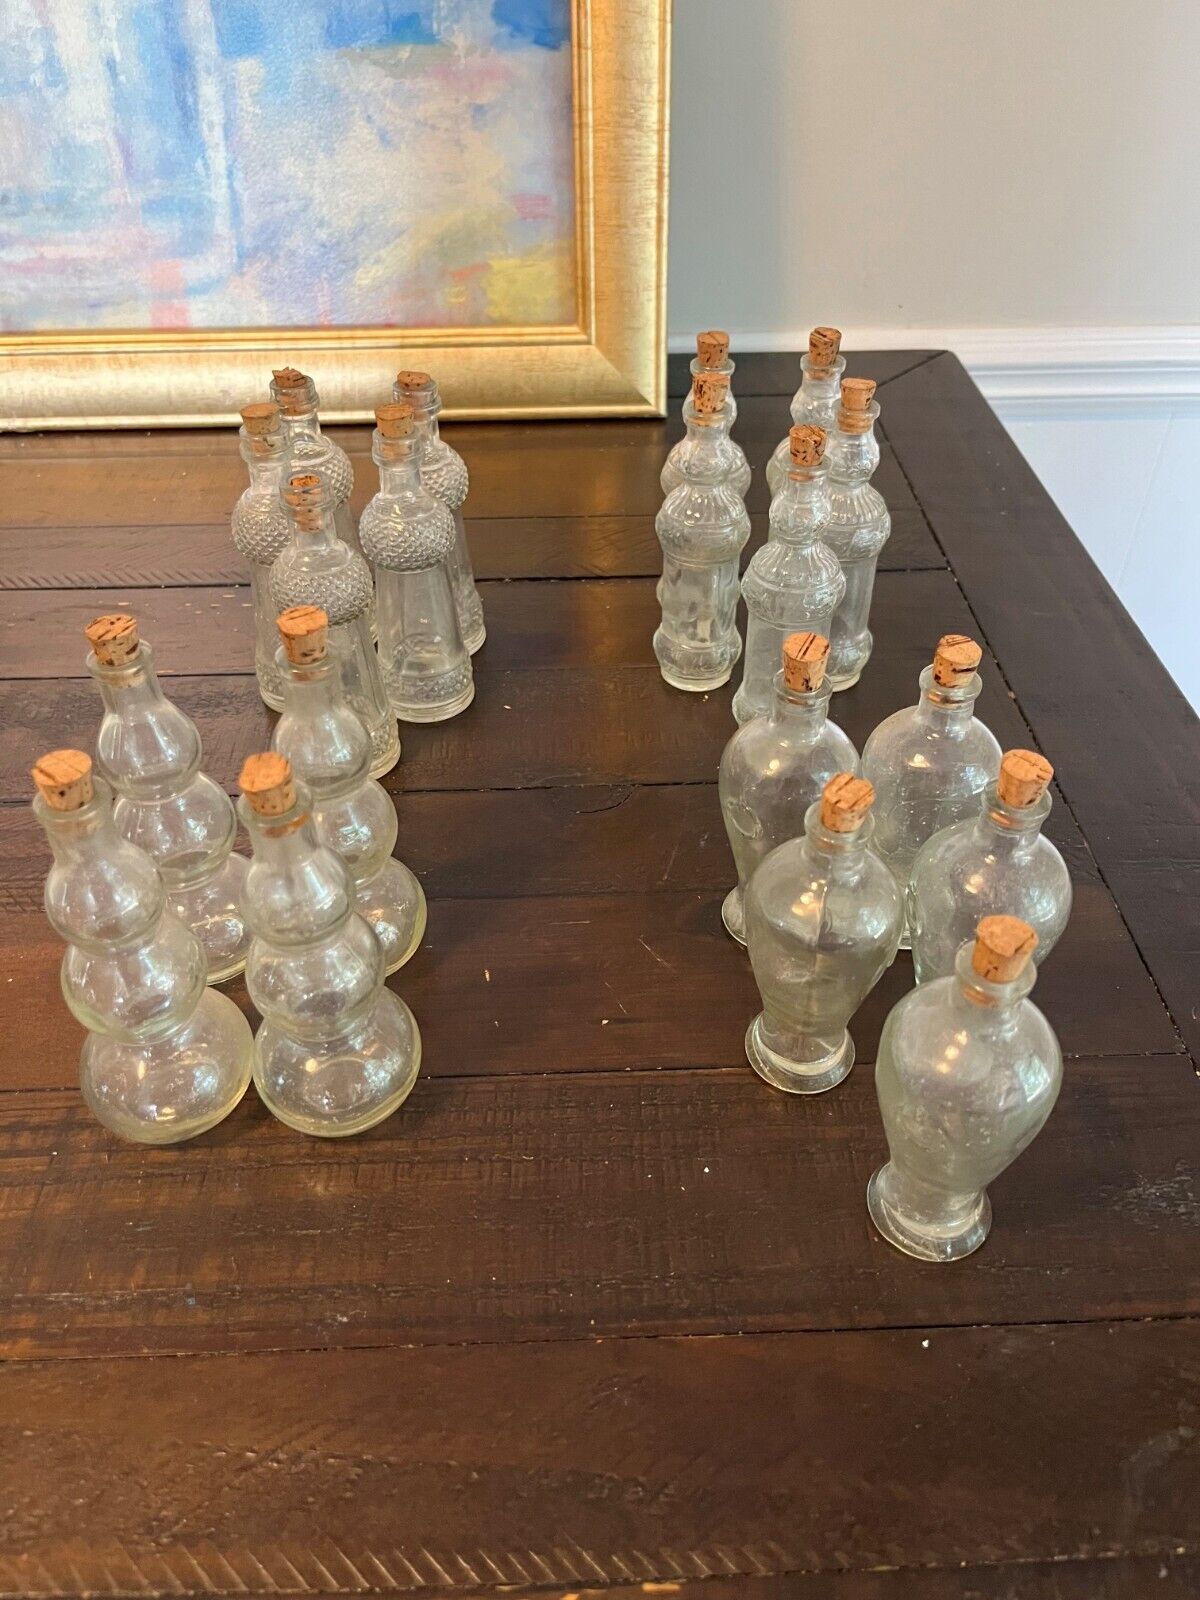 Lot of 19 Old Vintage Glass Bottles - 4 Shapes - Cork Stoppers